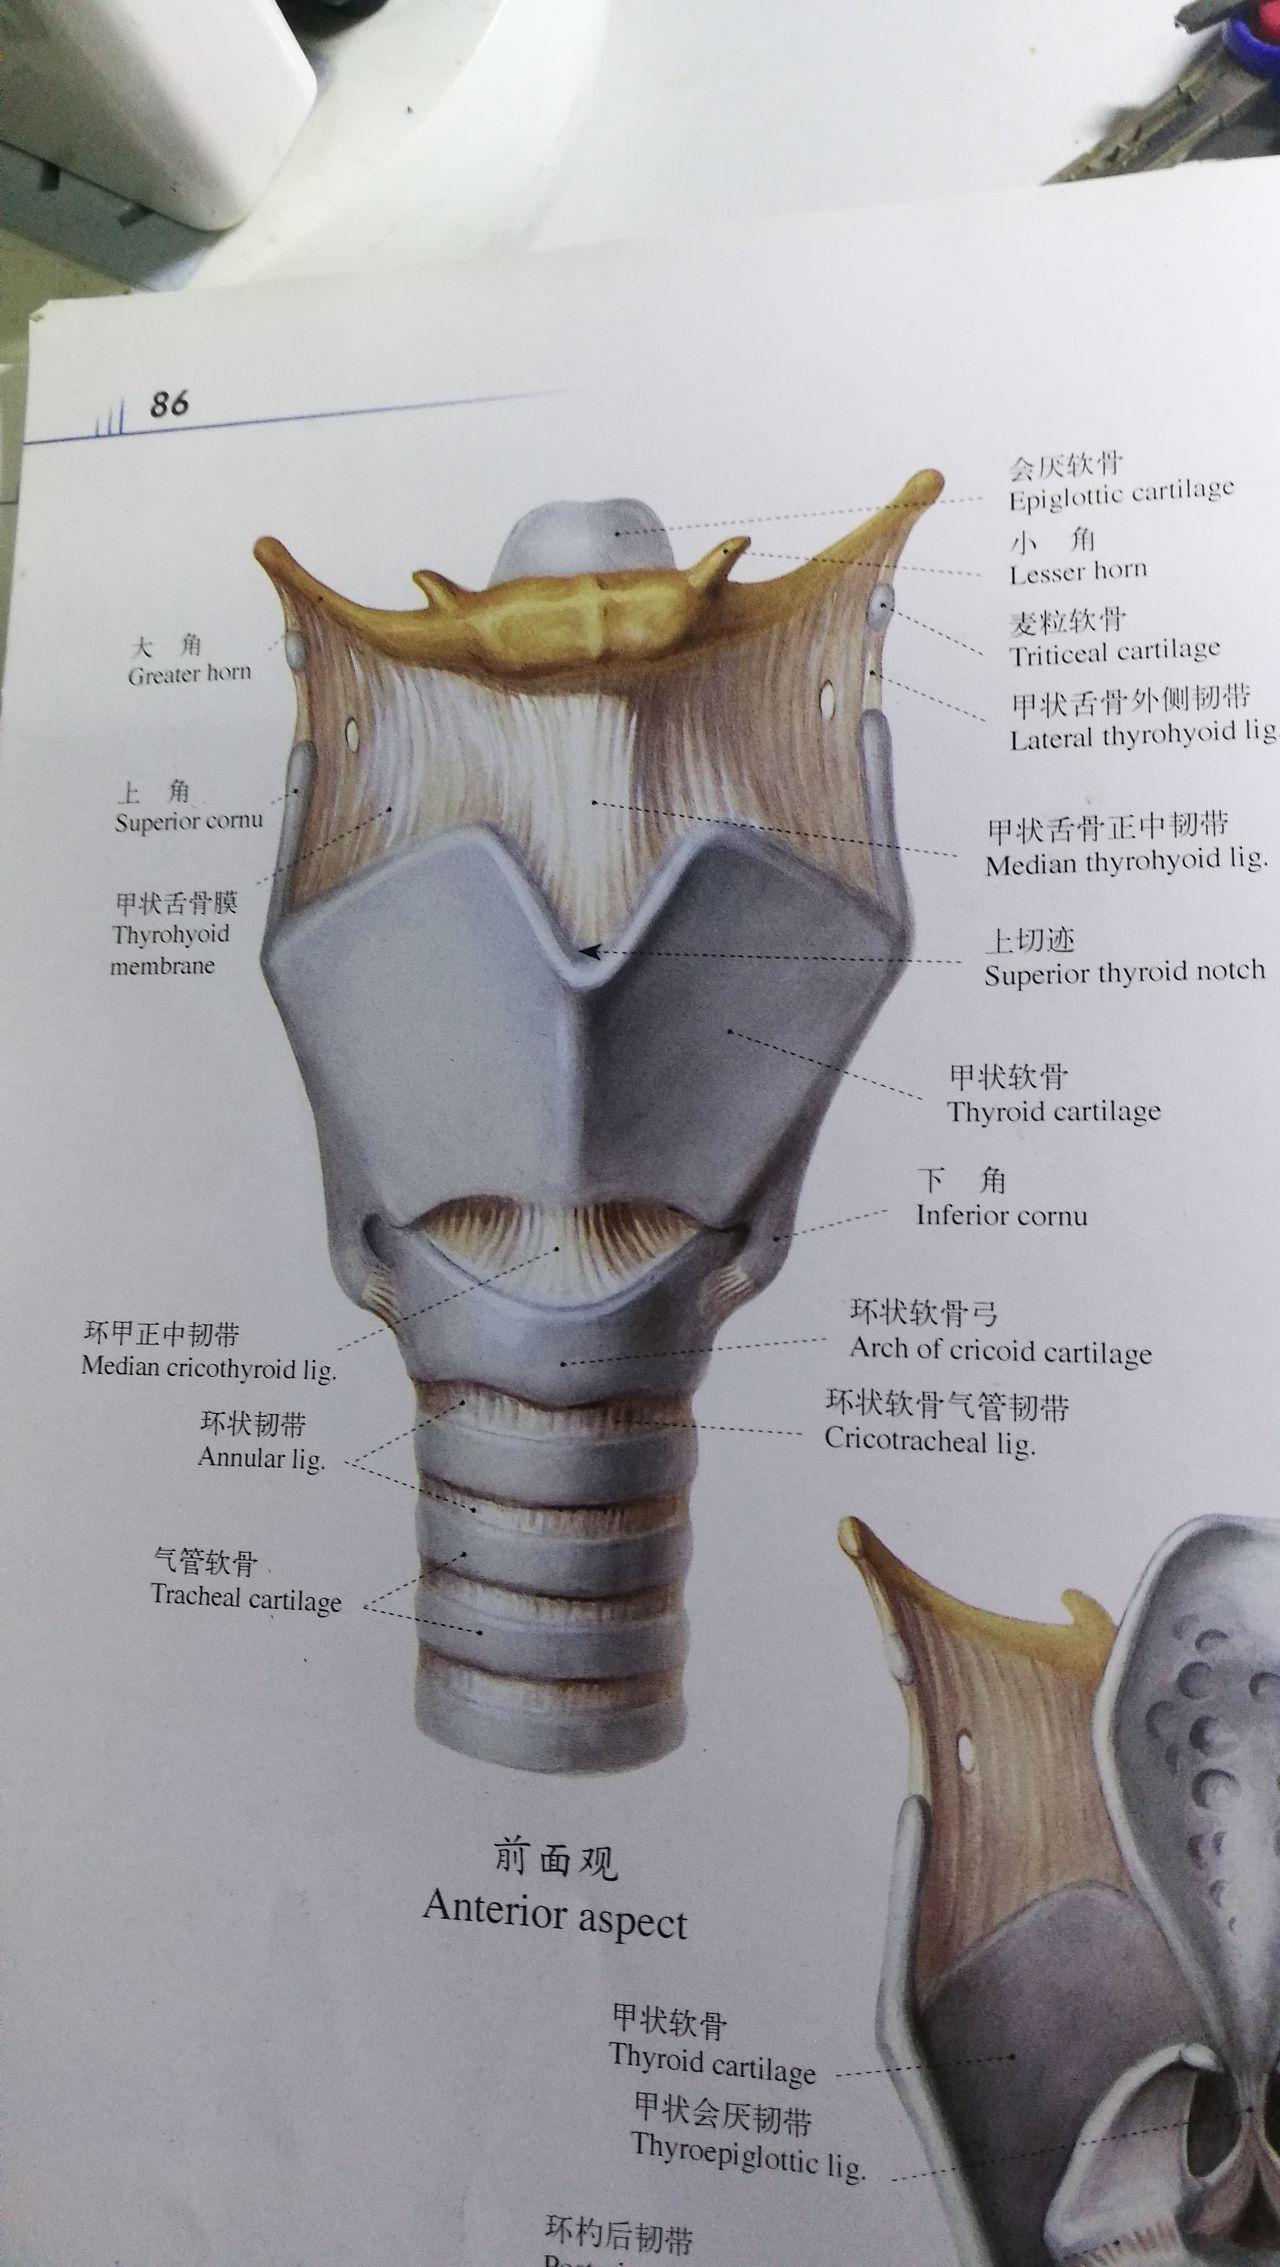 喉结的位置图片